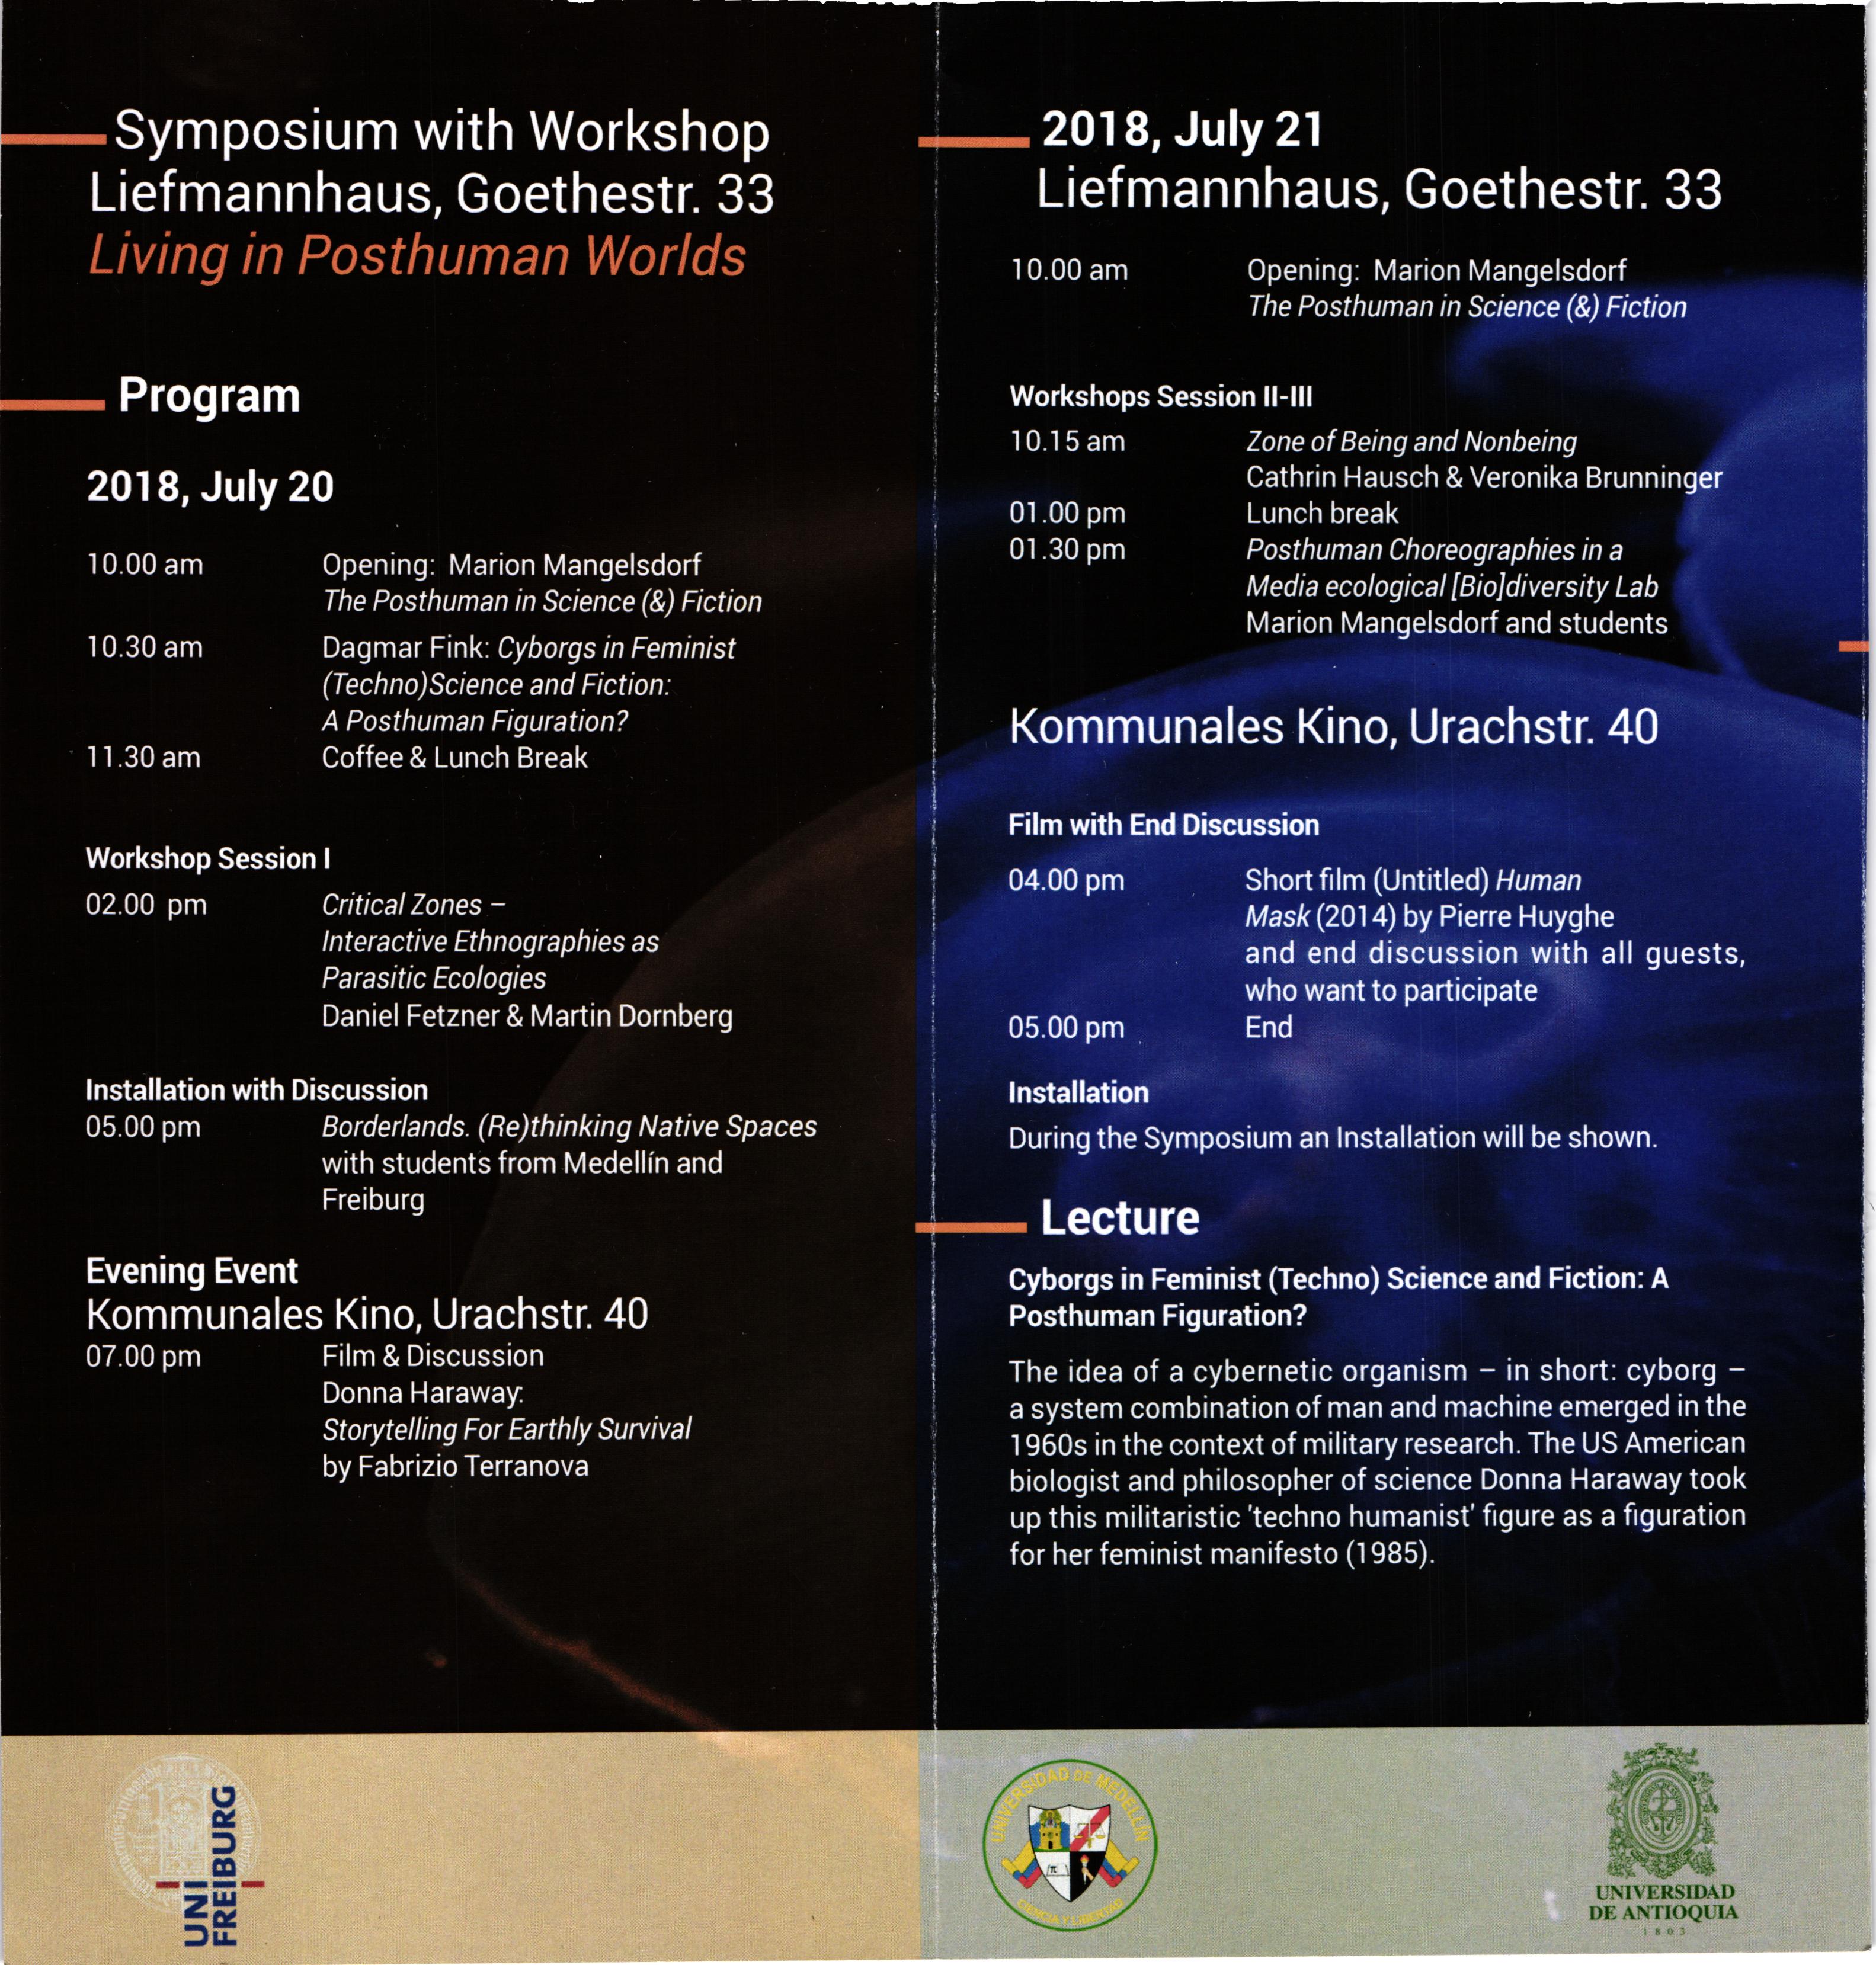 Symposium with Workshops 2018 - I